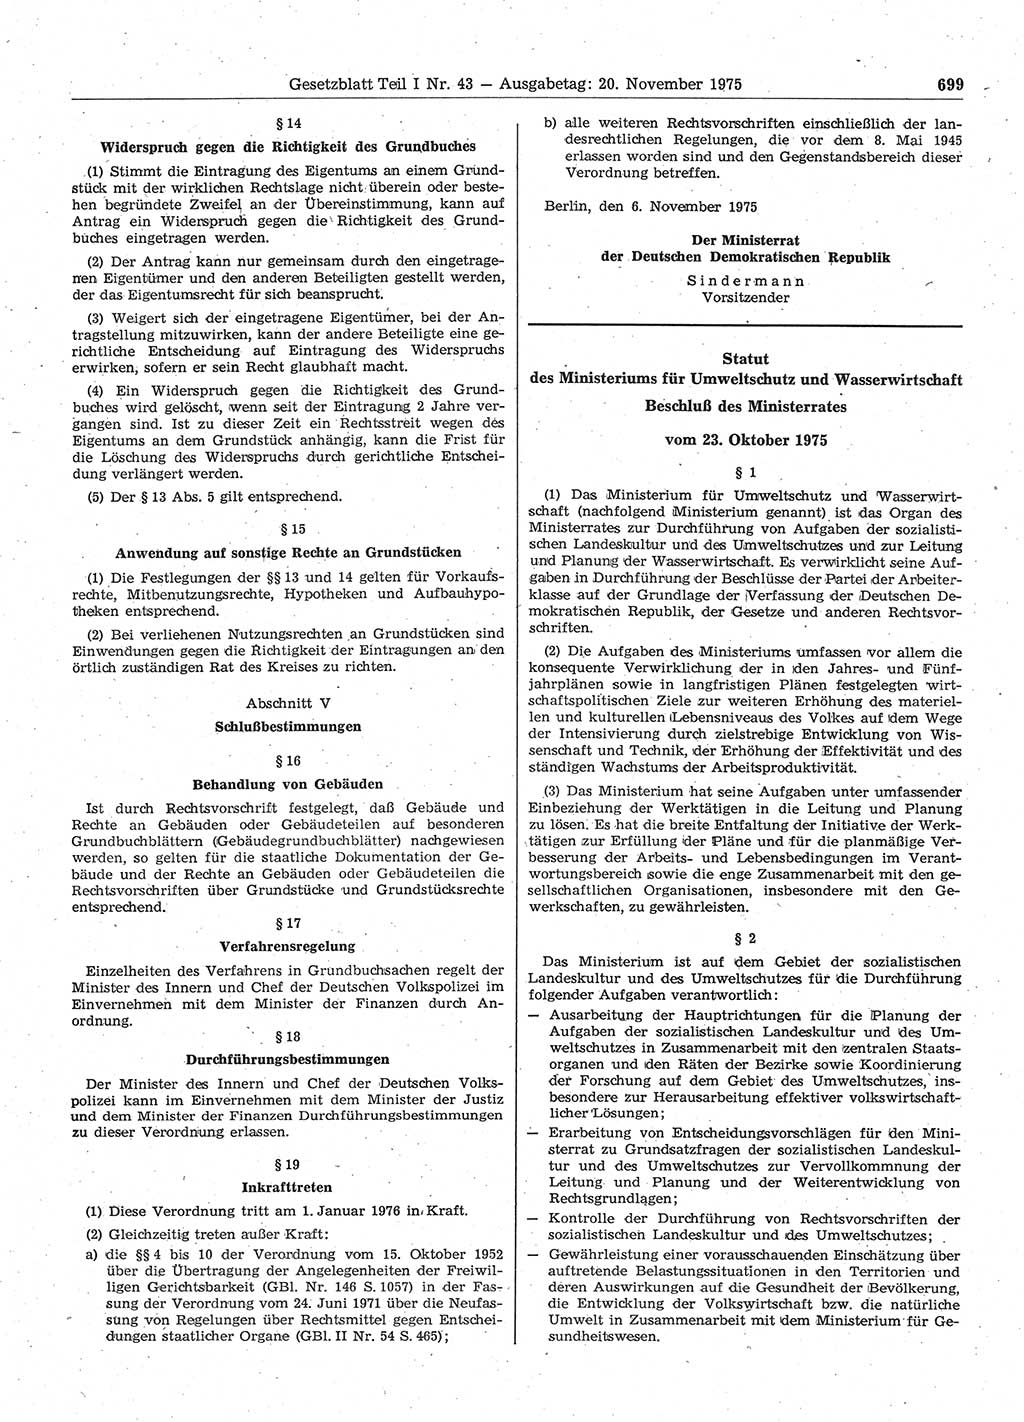 Gesetzblatt (GBl.) der Deutschen Demokratischen Republik (DDR) Teil Ⅰ 1975, Seite 699 (GBl. DDR Ⅰ 1975, S. 699)